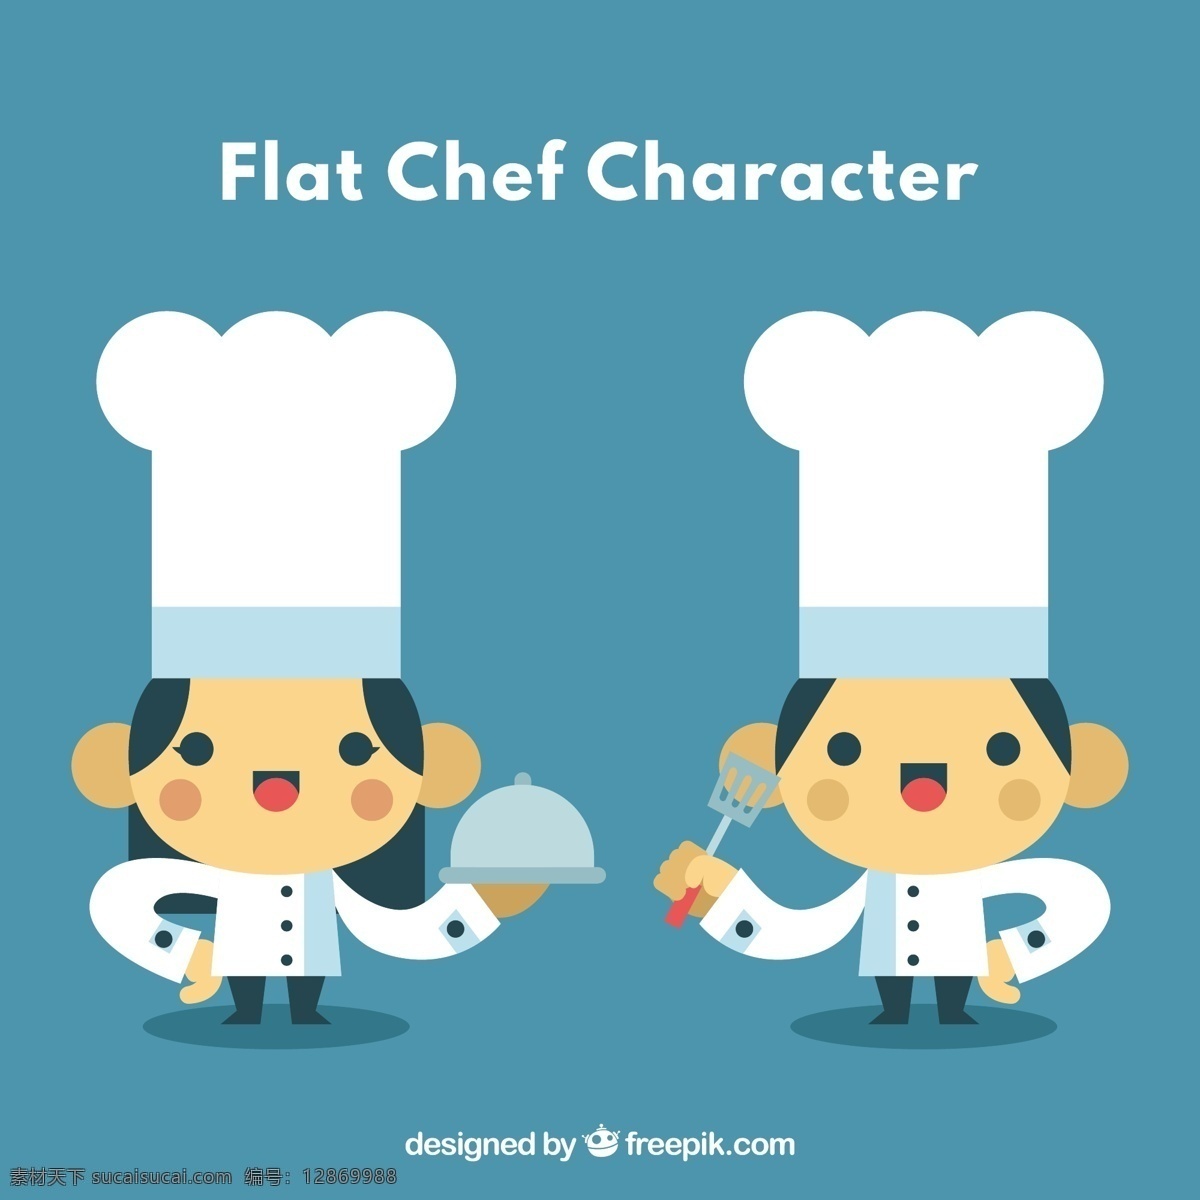 平面设计 中 厨师 角色 餐厅 人物 卡通 厨房 平面 卡通人物 美食 煲 职业 好 烹饪